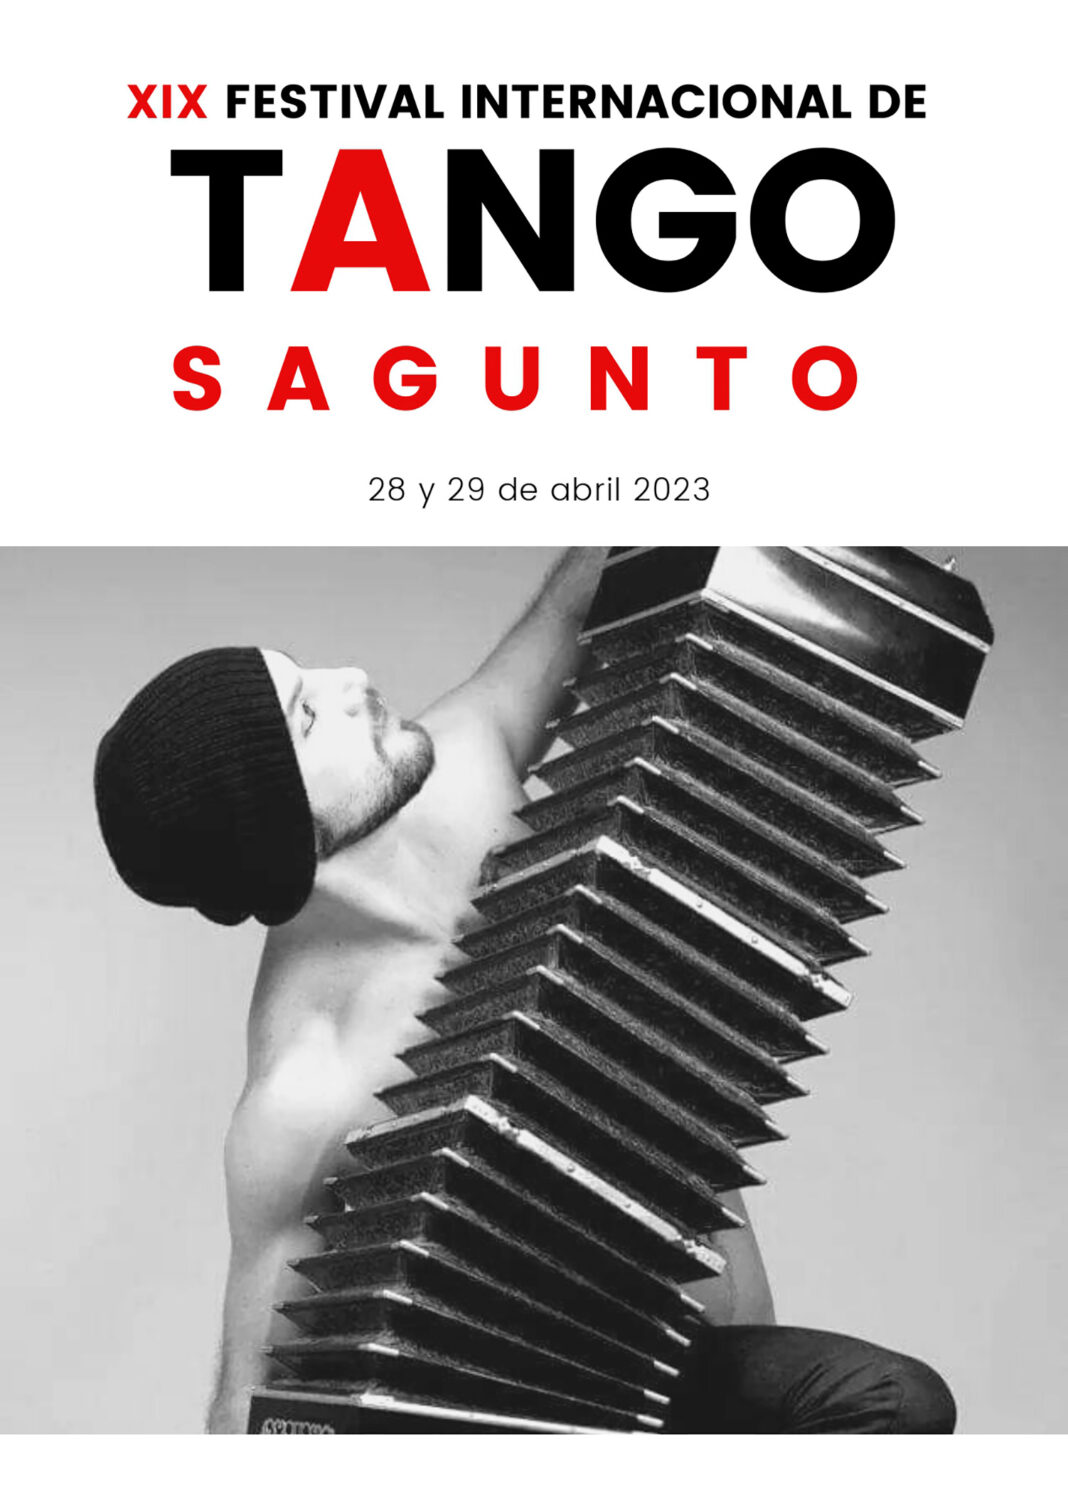 Sagunto acogerá el XIX Festival Internacional de Tango en el Centro Cultural Mario Monreal y la Pl. Cronista Chabret